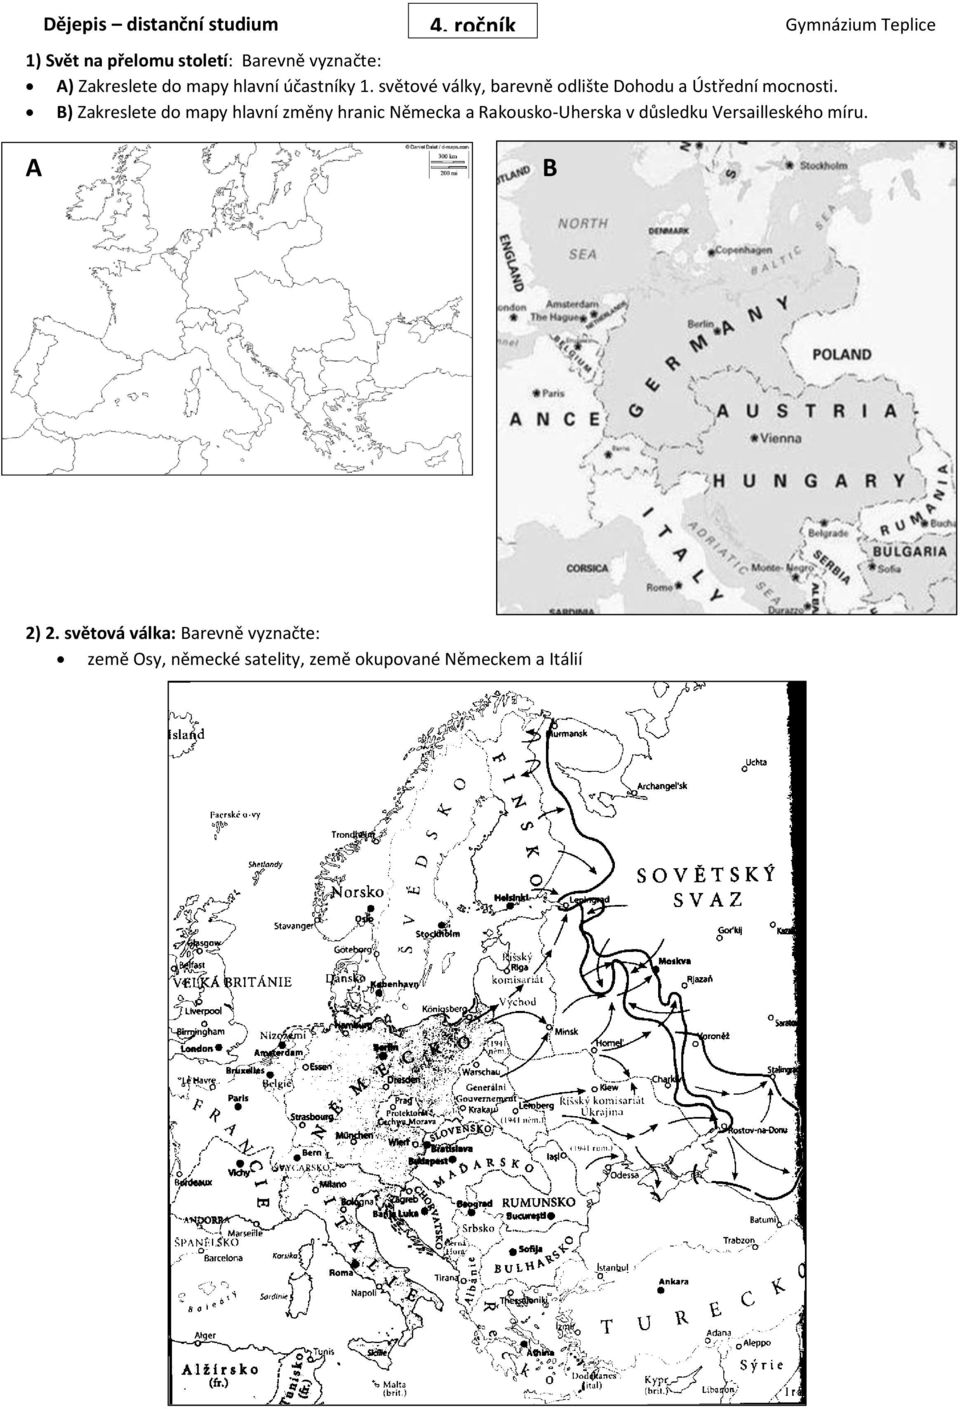 B) Zakreslete do mapy hlavní změny hranic Německa a Rakousko-Uherska v důsledku Versailleského míru.